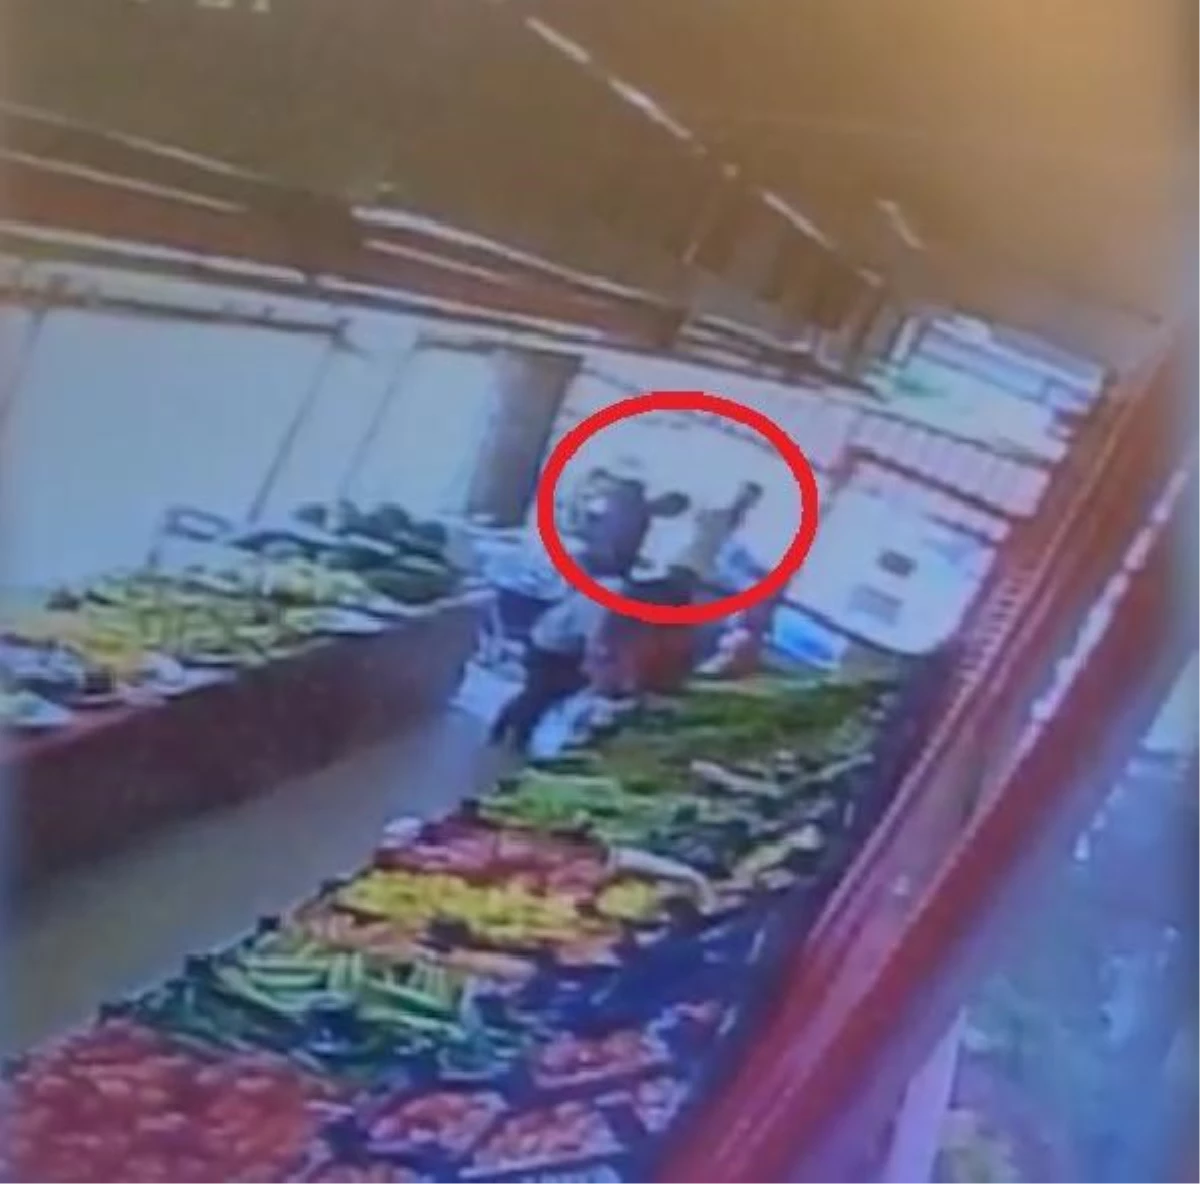 Müşteri, "Maske takın" diye uyaran market çalışanının burnunu kırdı